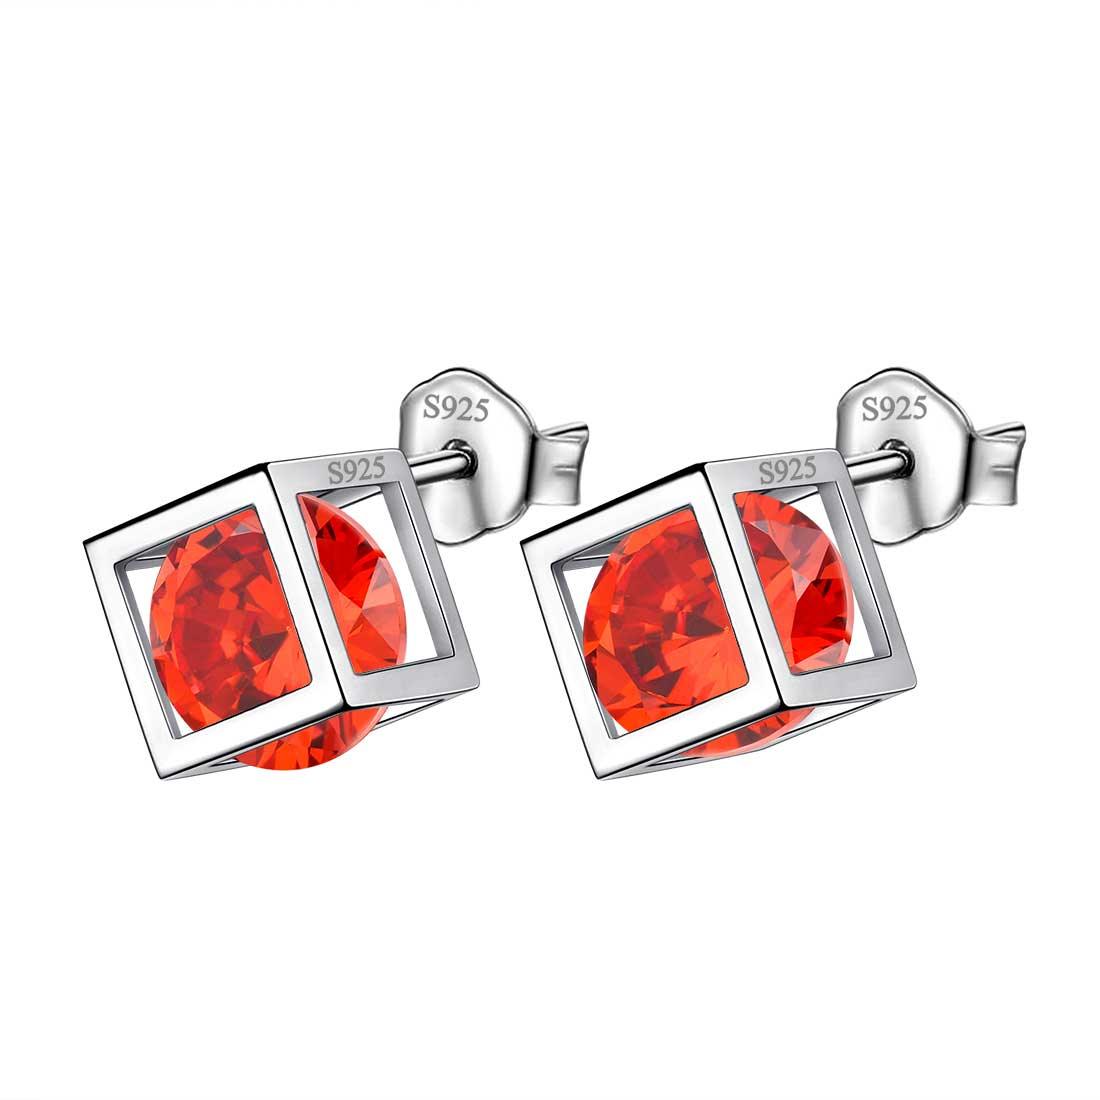 3D Cube Birthstone January Garnet Earrings Sterling Silver - Earrings - Aurora Tears